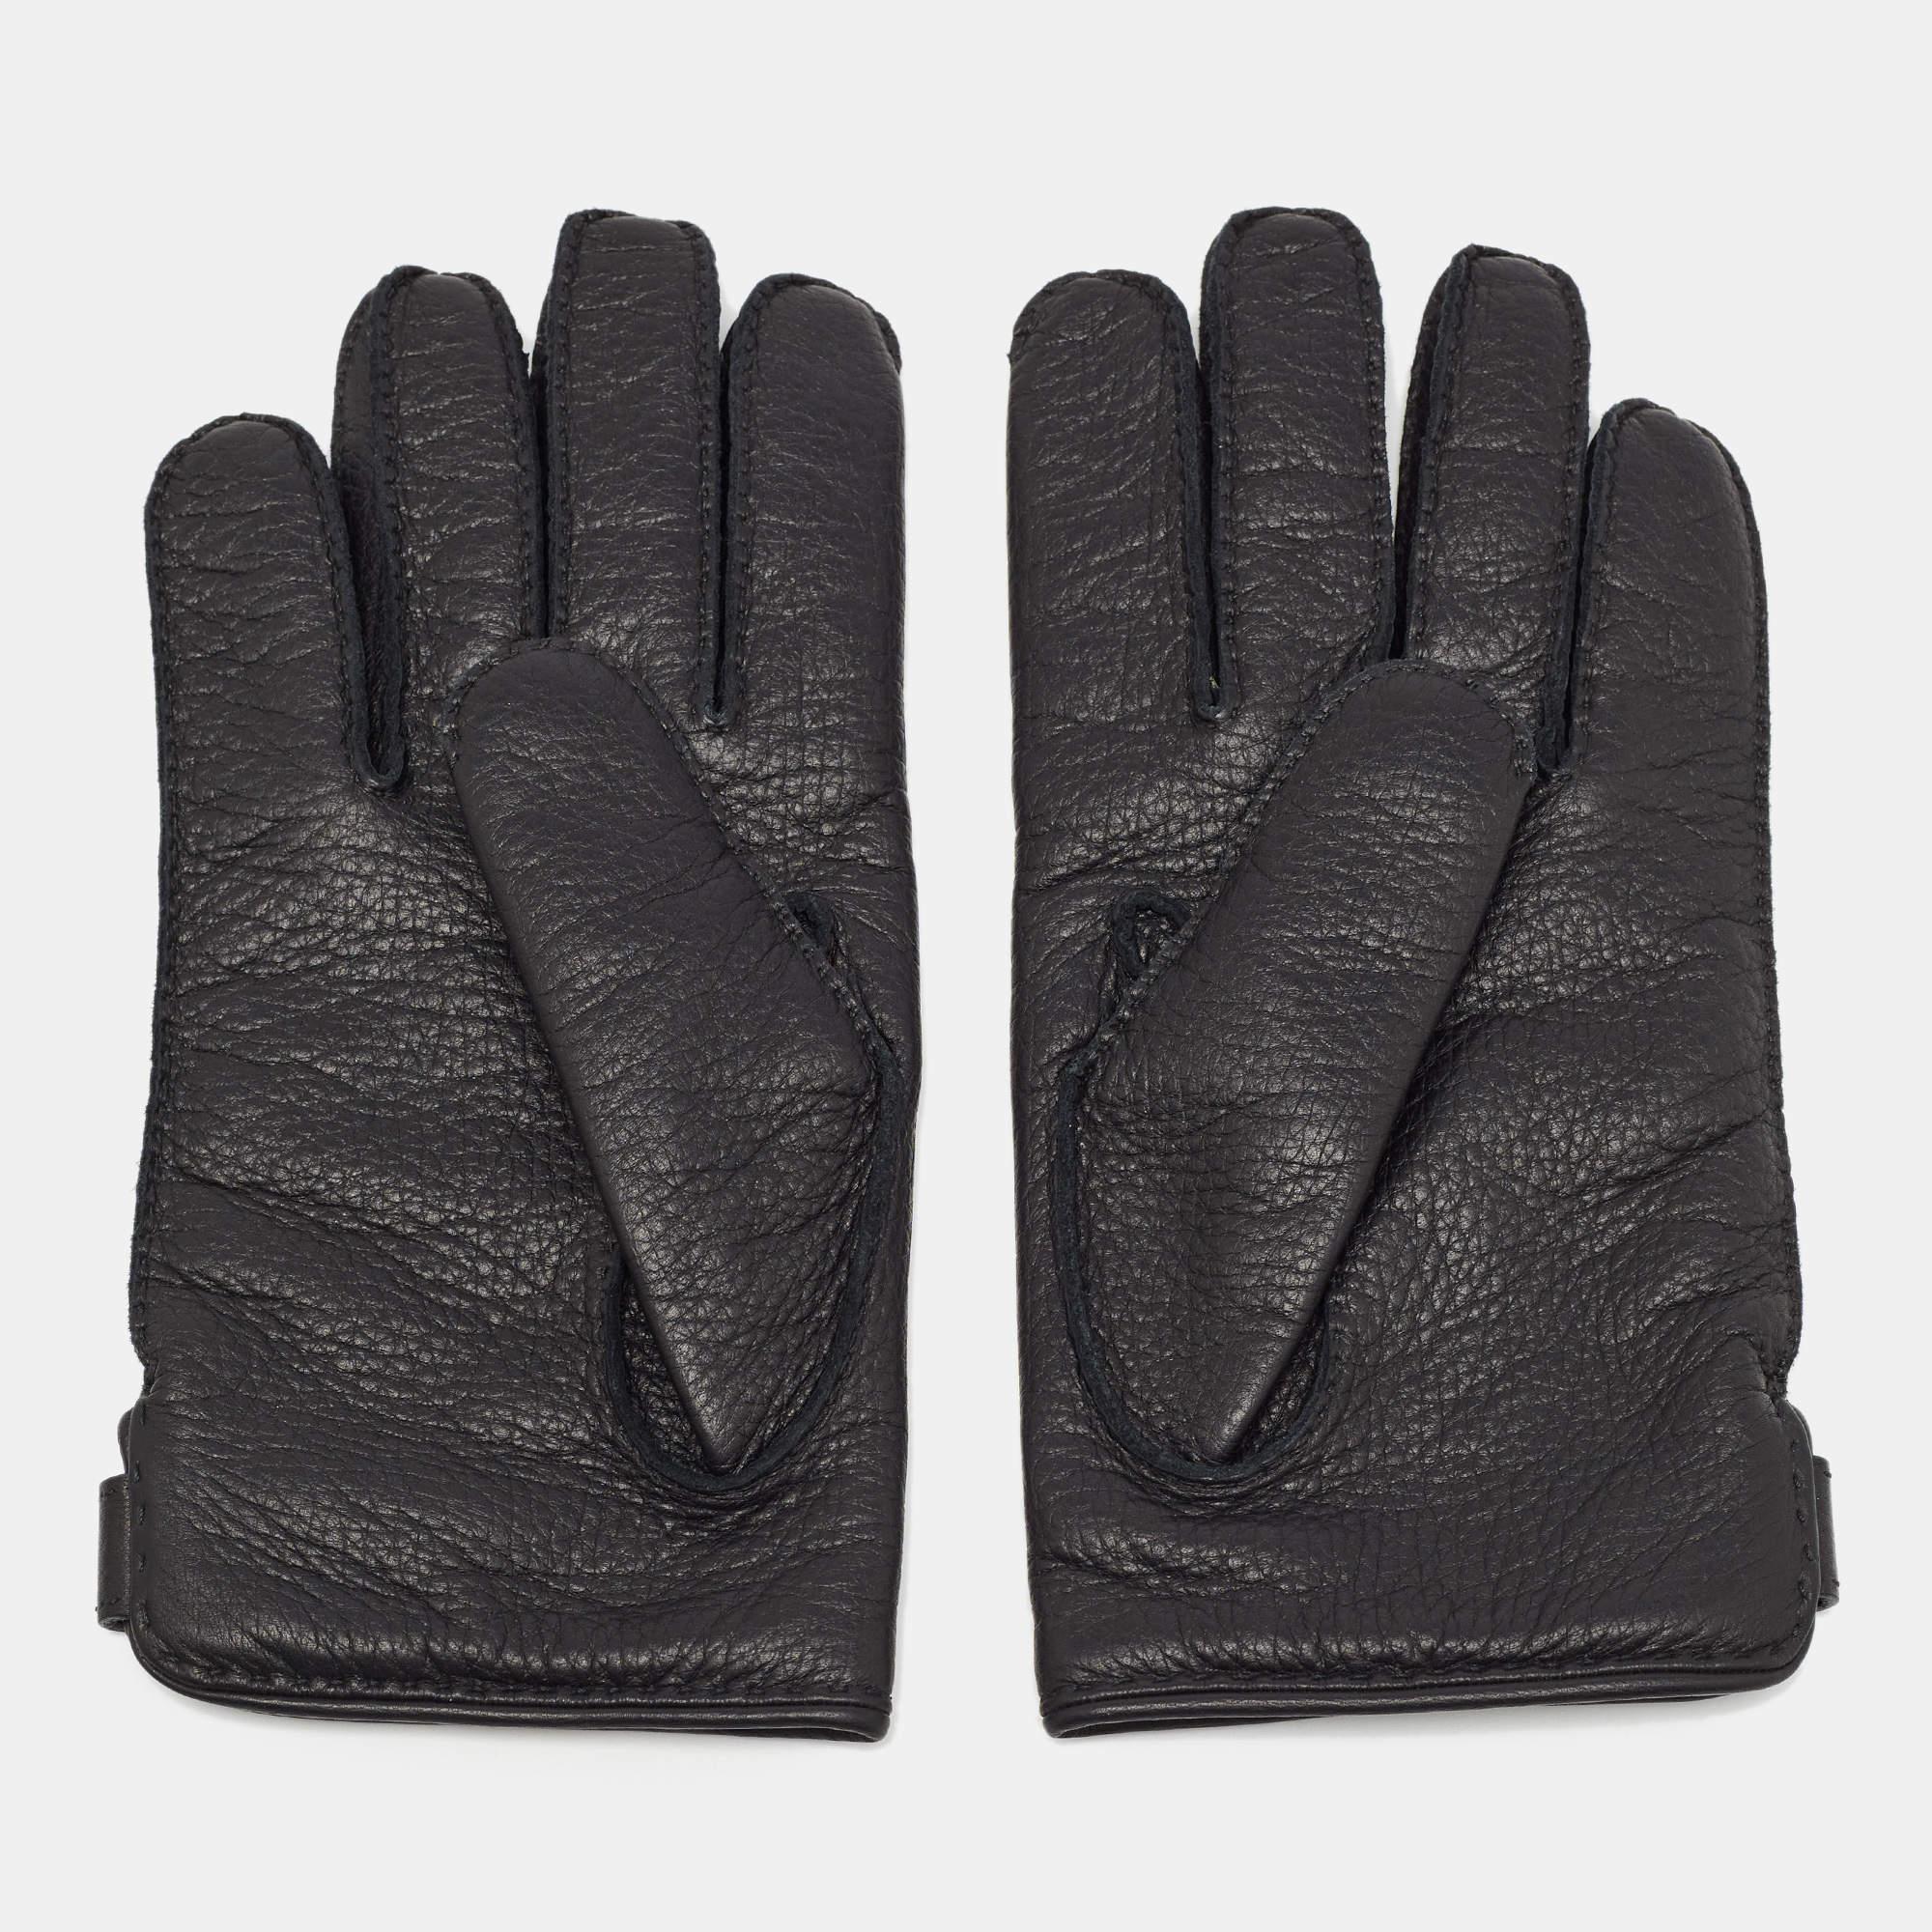 Hermes sorgt dafür, dass Sie Spaß daran haben, diese Handschuhe zu stylen und sie oft zu tragen. Sie sind aus Leder in einem edlen Design gefertigt und mit Kaschmir gefüttert.

